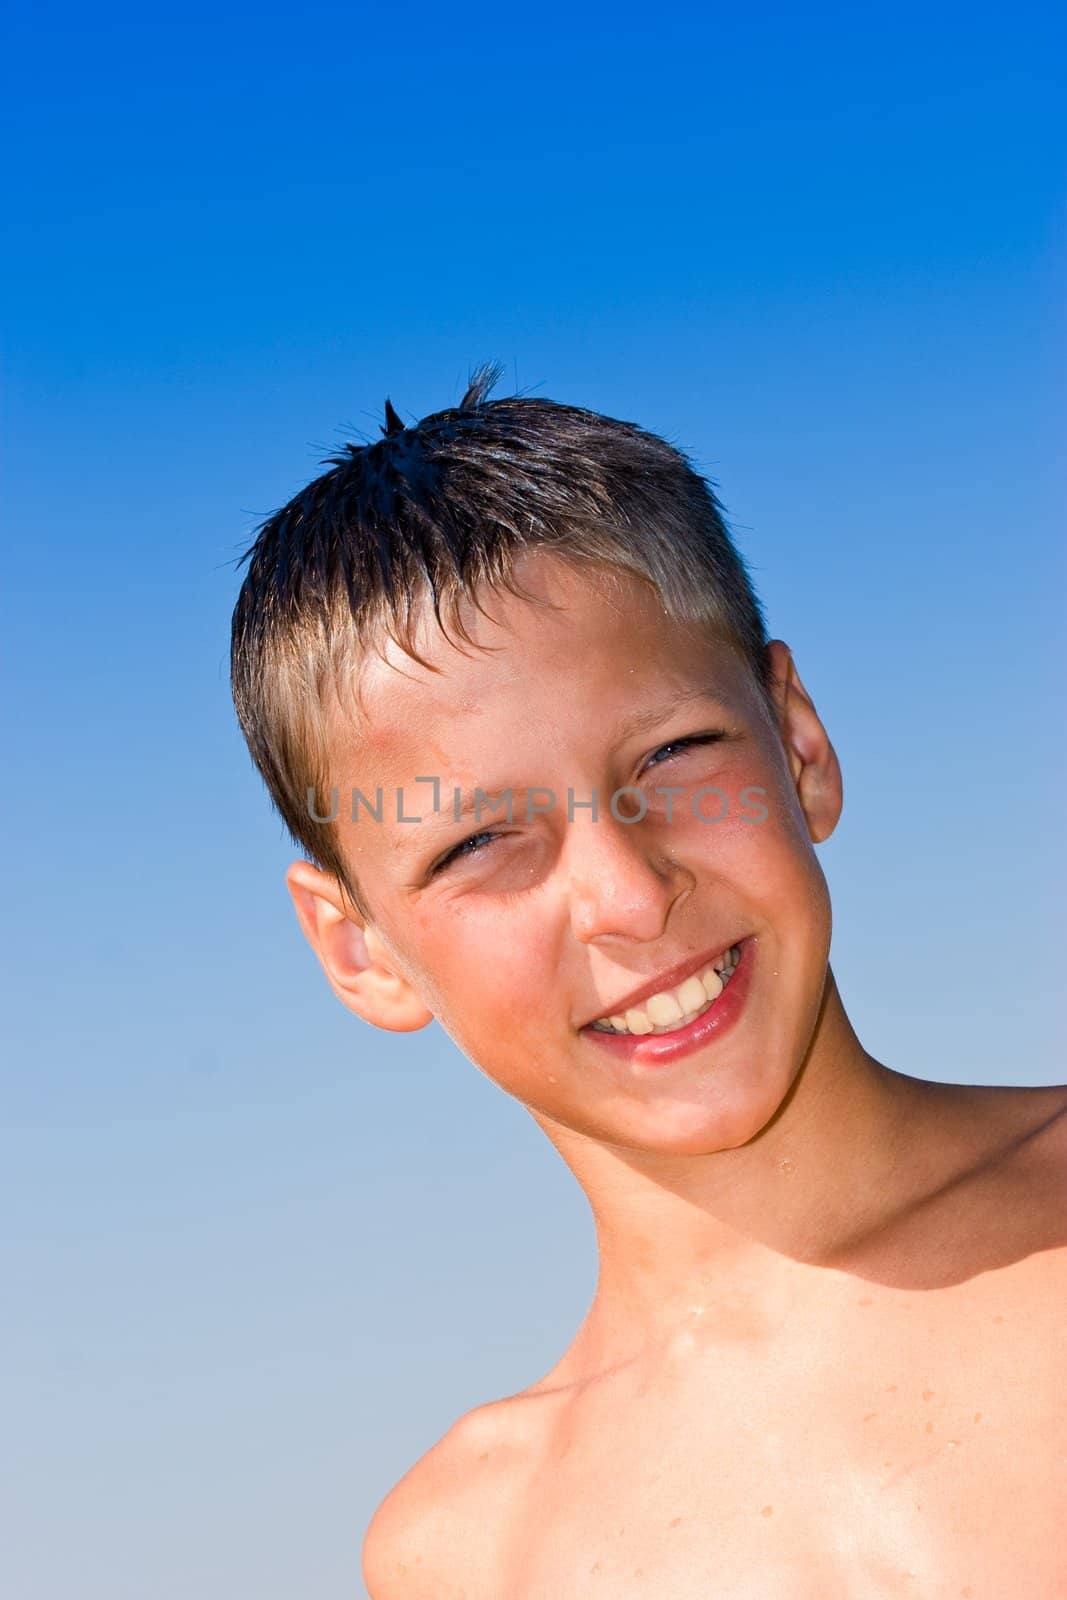 portrait series: summer boy portrait over blue sky